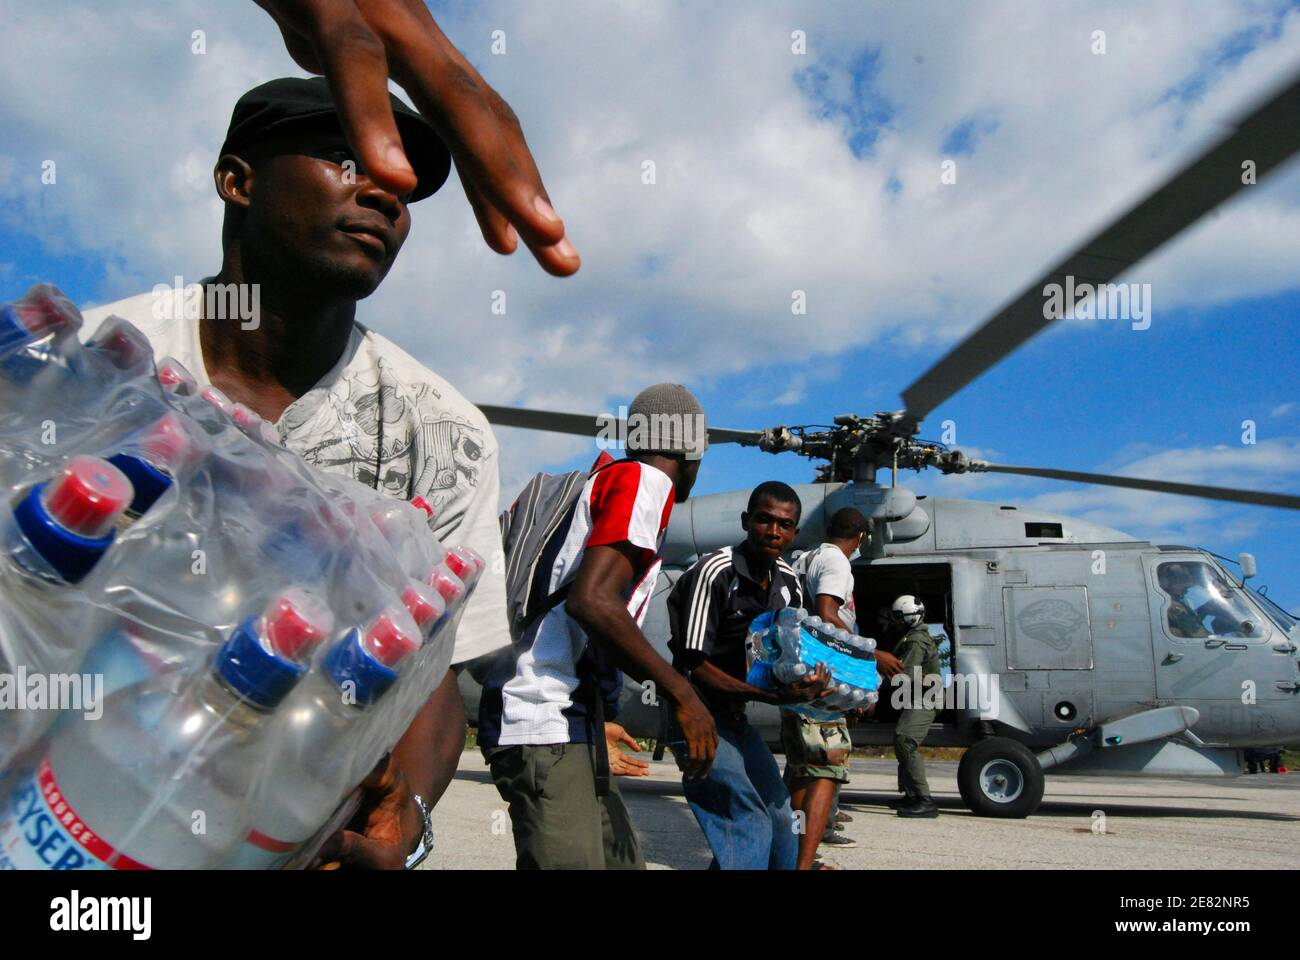 Les travailleurs haïtiens déchargent des fournitures pour le Programme alimentaire mondial des Nations Unies à l'aéroport de Jacmel, au sud-ouest de Port-au-Prince le 20 janvier 2010. Un nouveau tremblement de terre a secoué la capitale haïtienne dévastée Port-au-Prince mercredi tôt, secouant des bâtiments déjà épatés et déclenchant la panique chez les survivants du tremblement de terre dévastateur de la semaine dernière. Les troupes canadiennes travaillent à Jacmel pour fournir de l'aide. REUTERS/Matthew Bigg (HAÏTI - Tags: TRANSPORT EN MILIEU DE CATASTROPHE) Banque D'Images